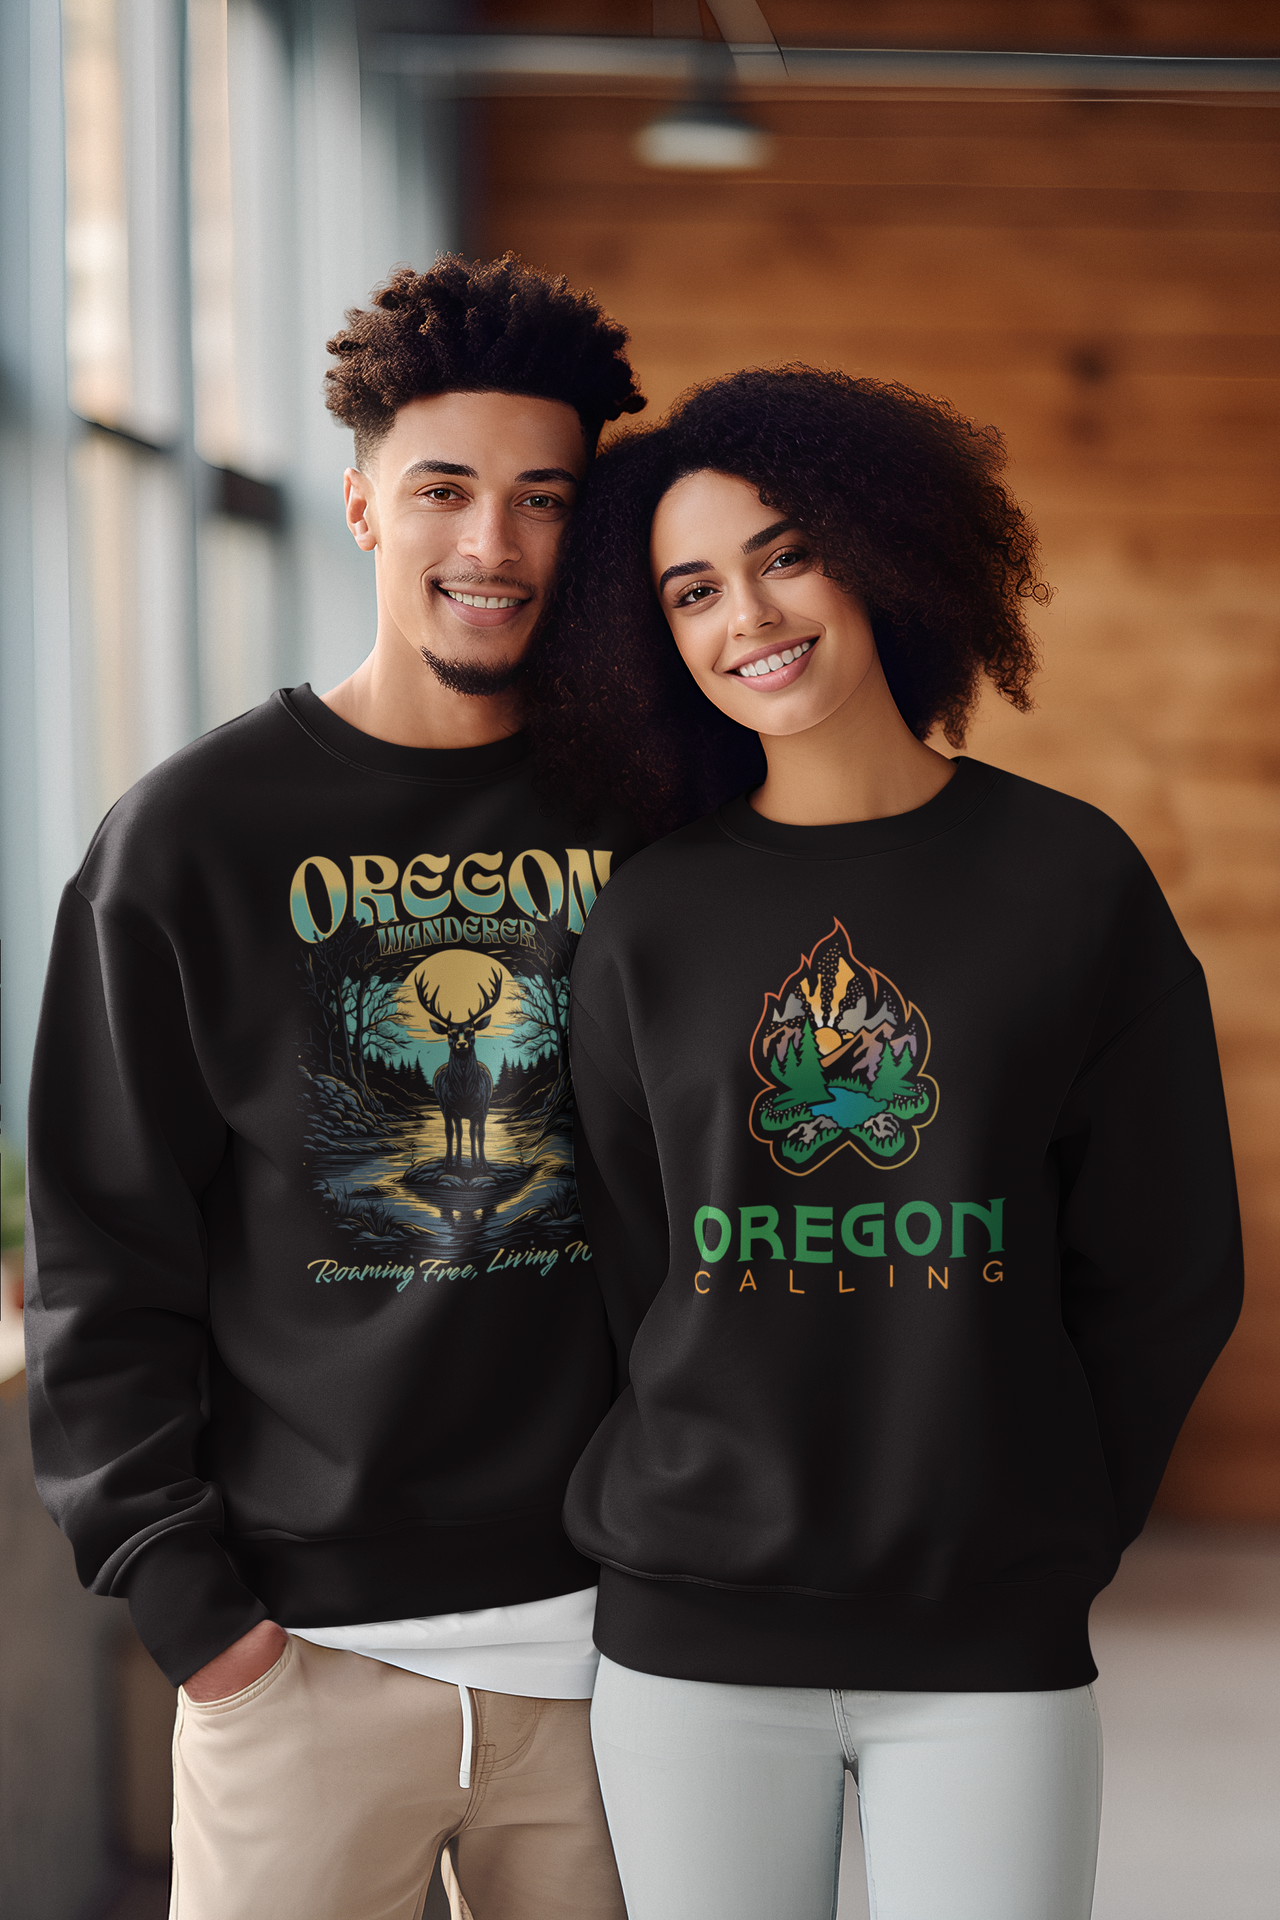 Oregon Calling - Unisex Premium Sweatshirt